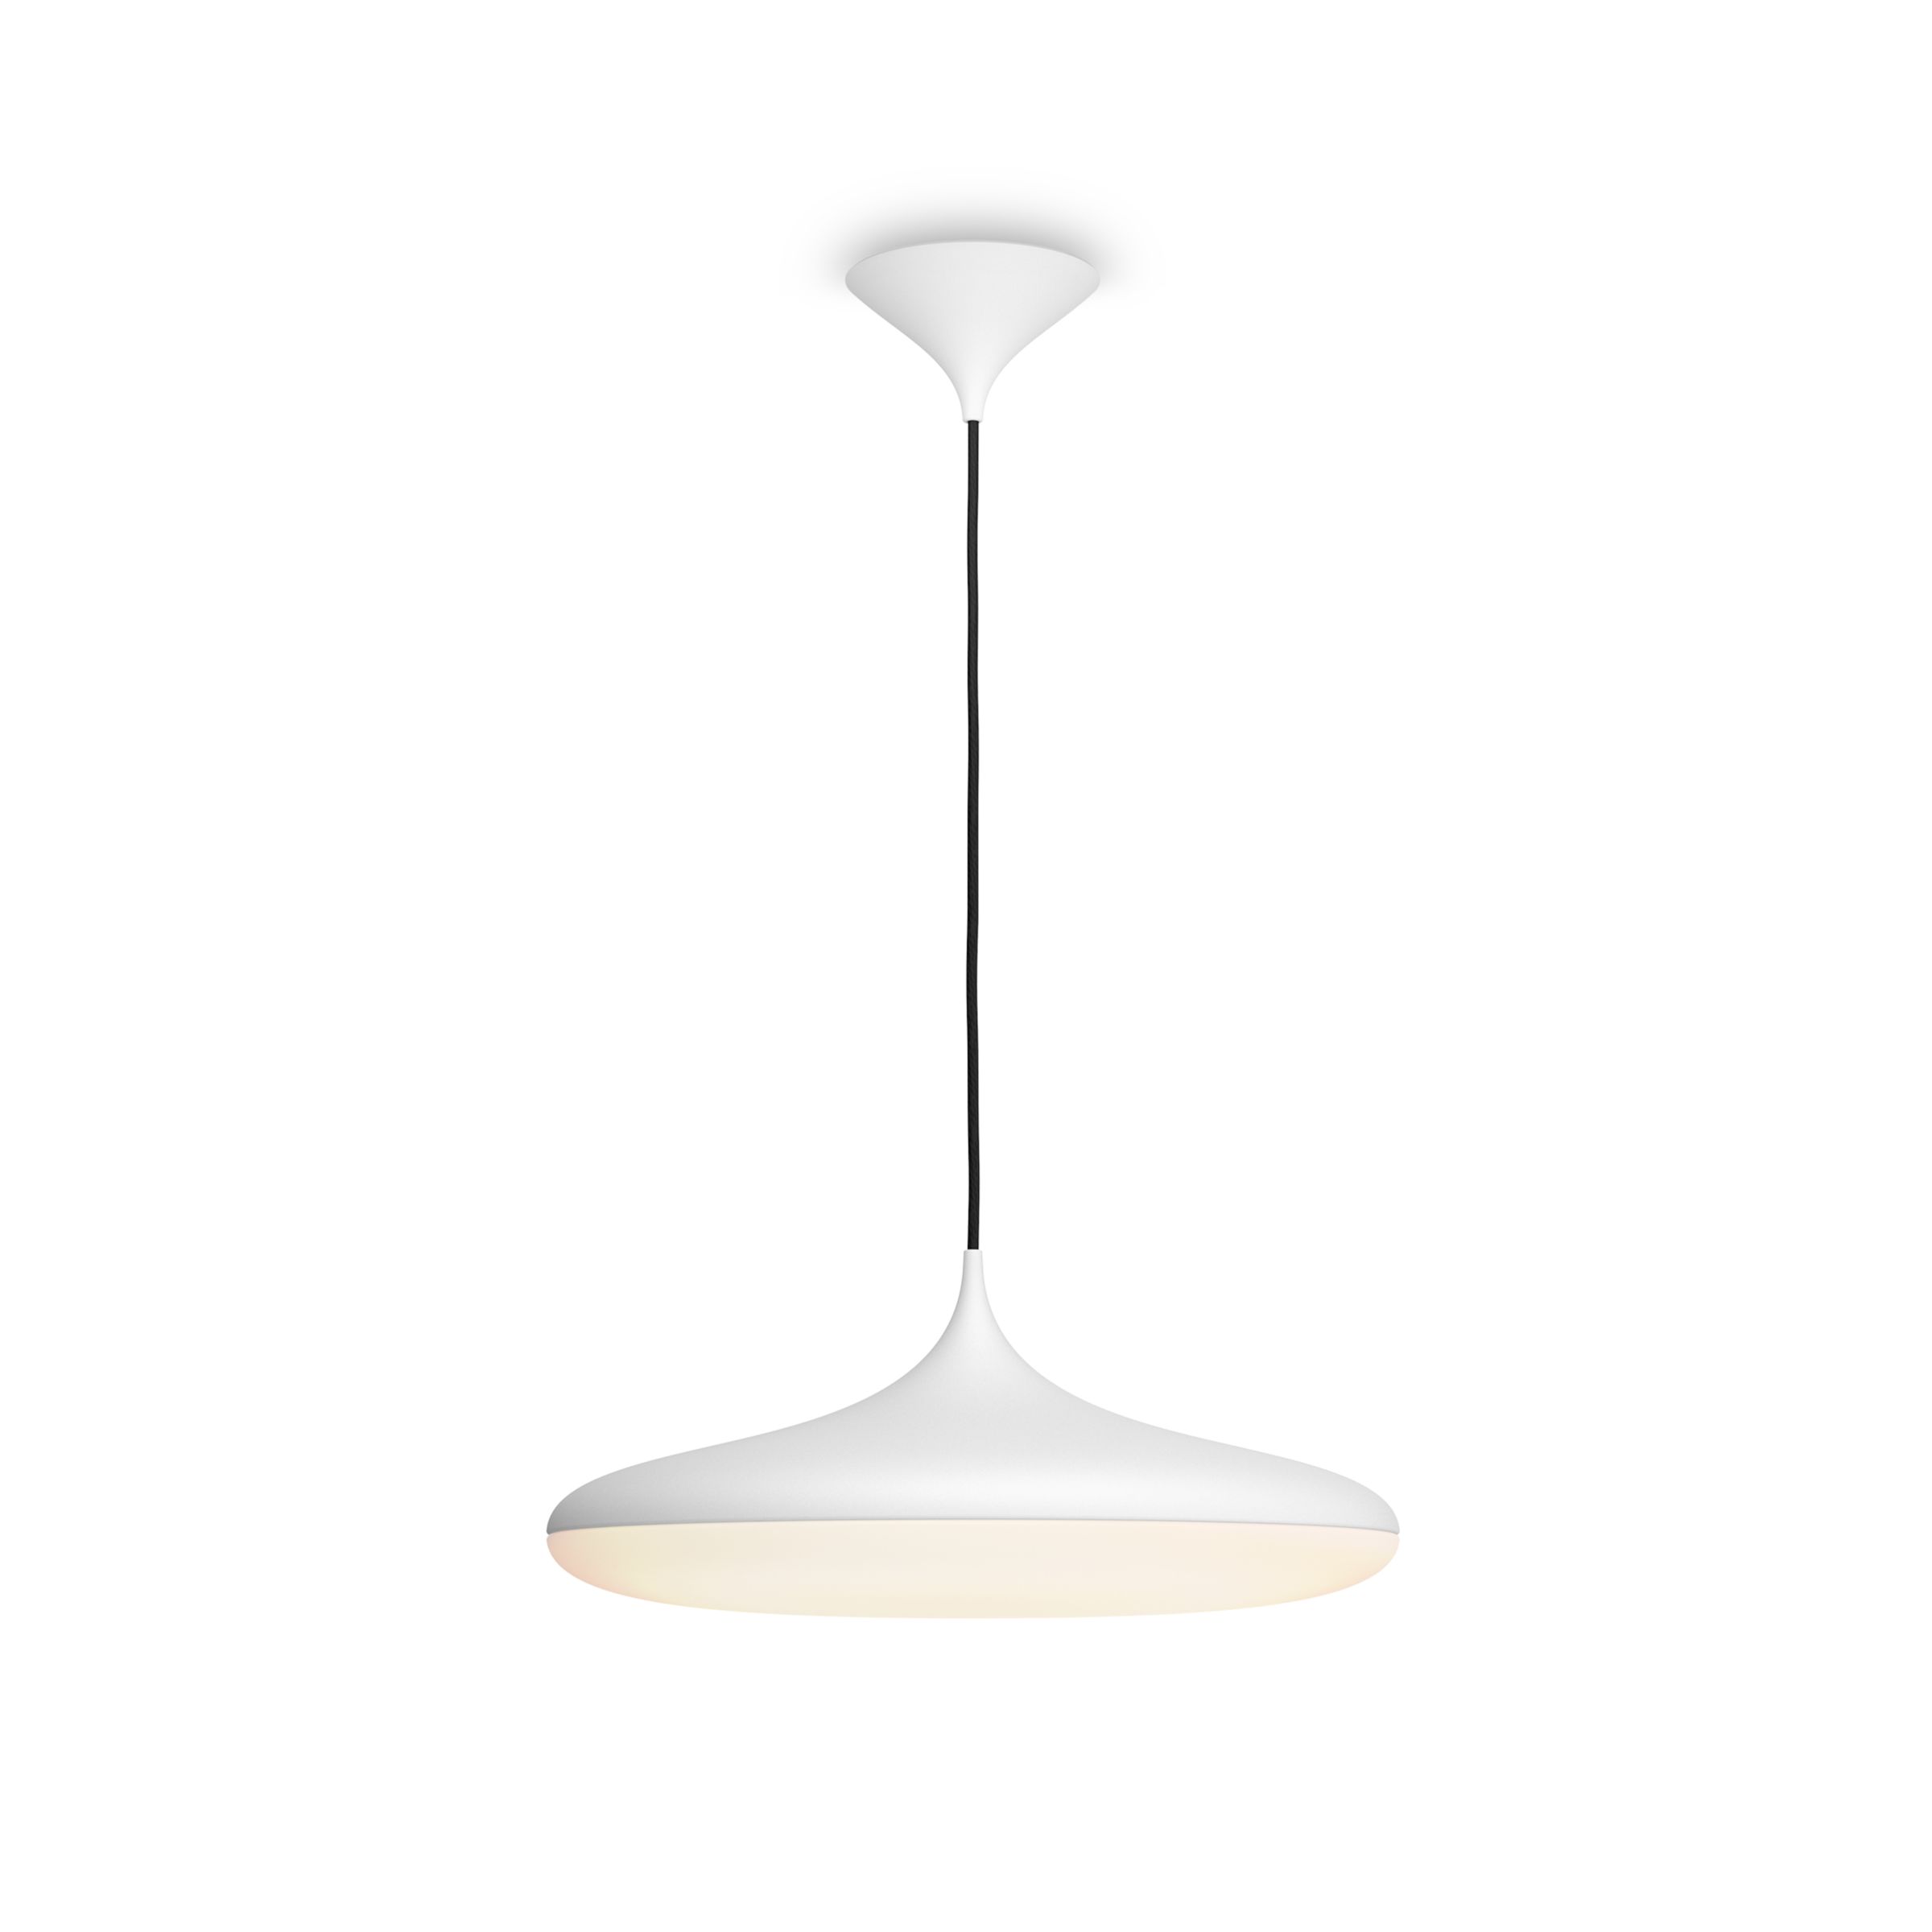 bodem Reinig de vloer Brullen Hue White ambiance Cher hanglamp | Philips Hue NL